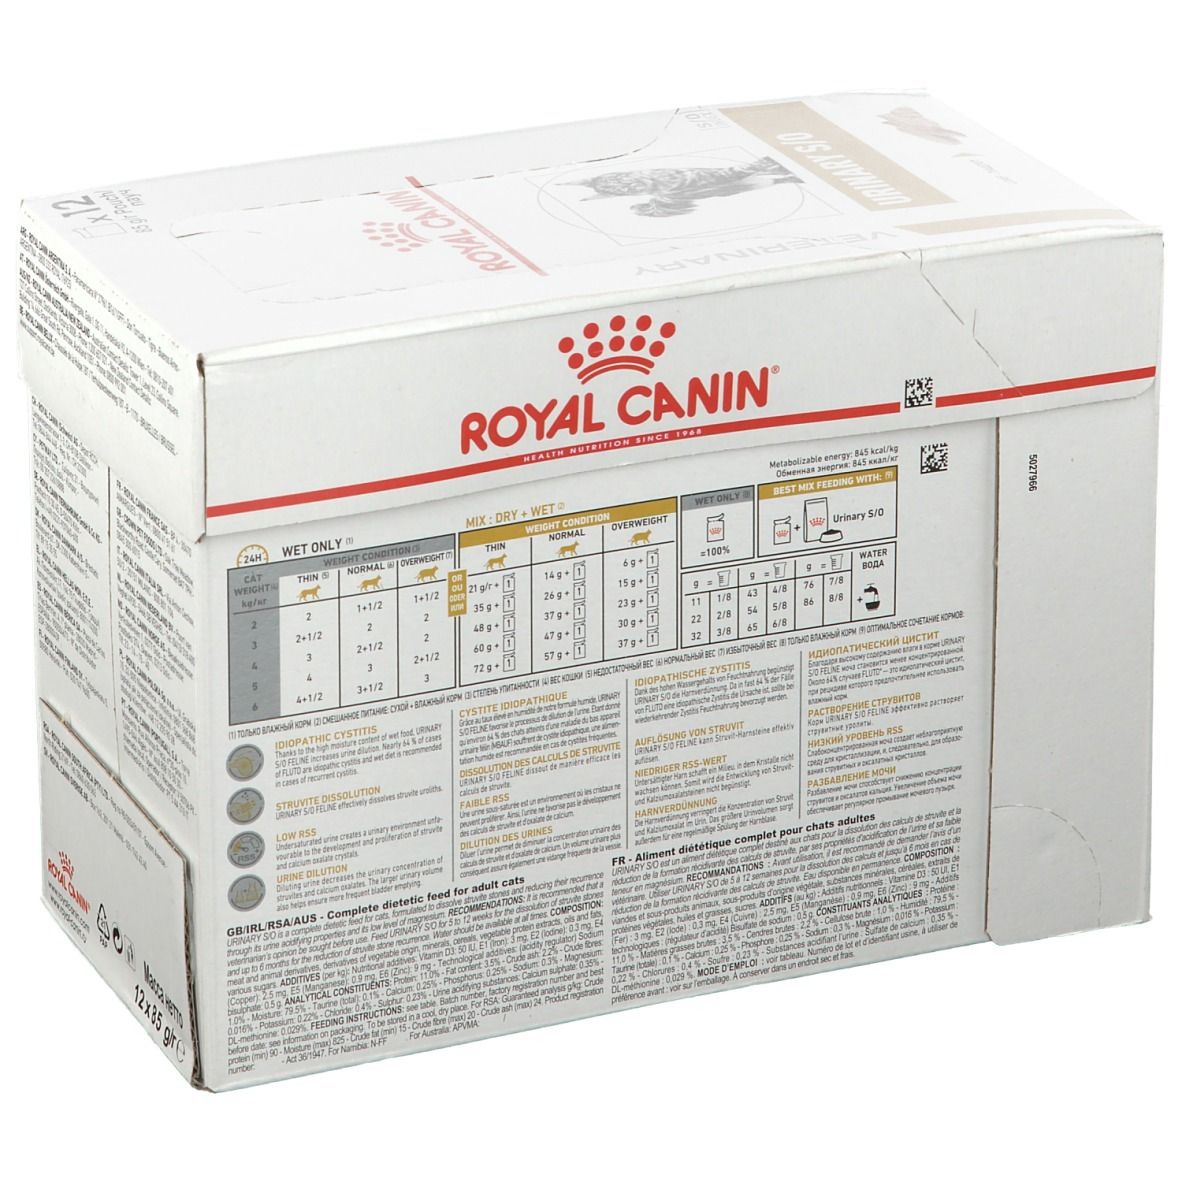 ROYAL CANIN Veterinary Urinary S/O Loaf